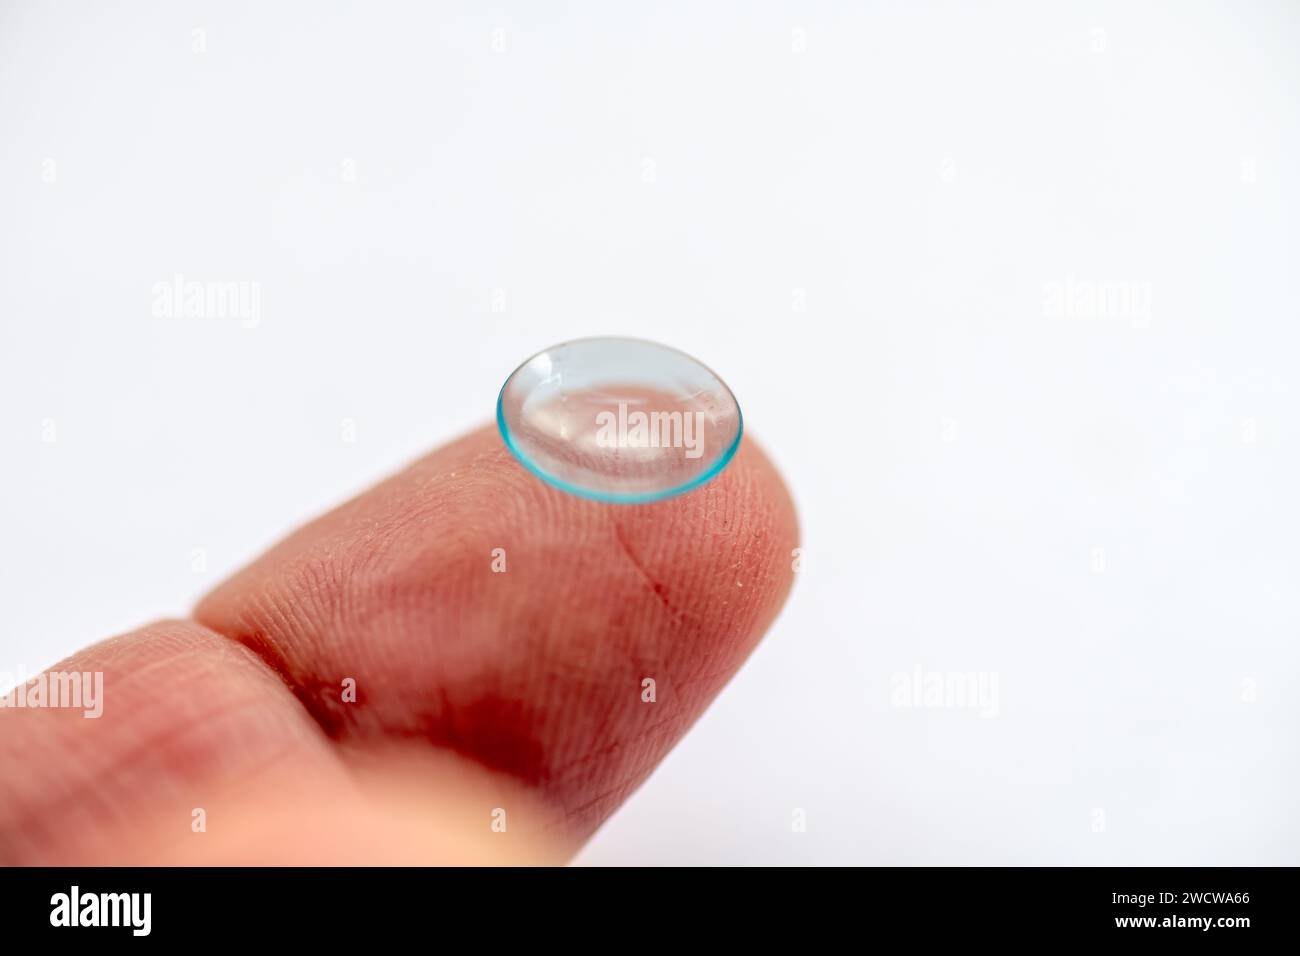 Un doigt avec une lentille de contact oculaire sur le dessus isolé dans un fond blanc Banque D'Images